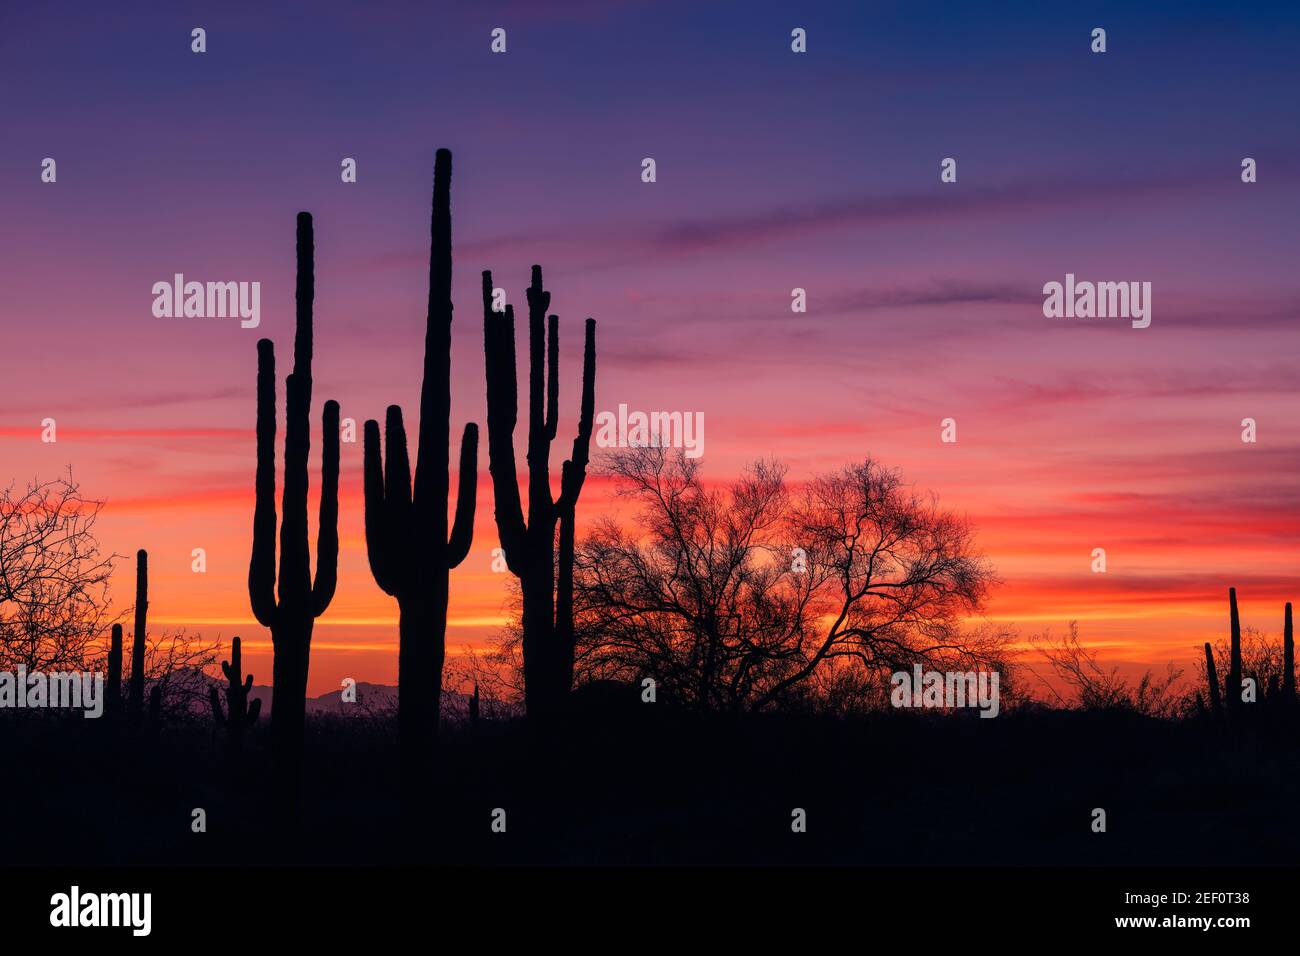 Farbenfrohe Sonnenuntergänge in Arizona und die malerische Landschaft der Sonora-Wüste mit Saguaro-Kakteen in der Nähe von Phoenix Stockfoto